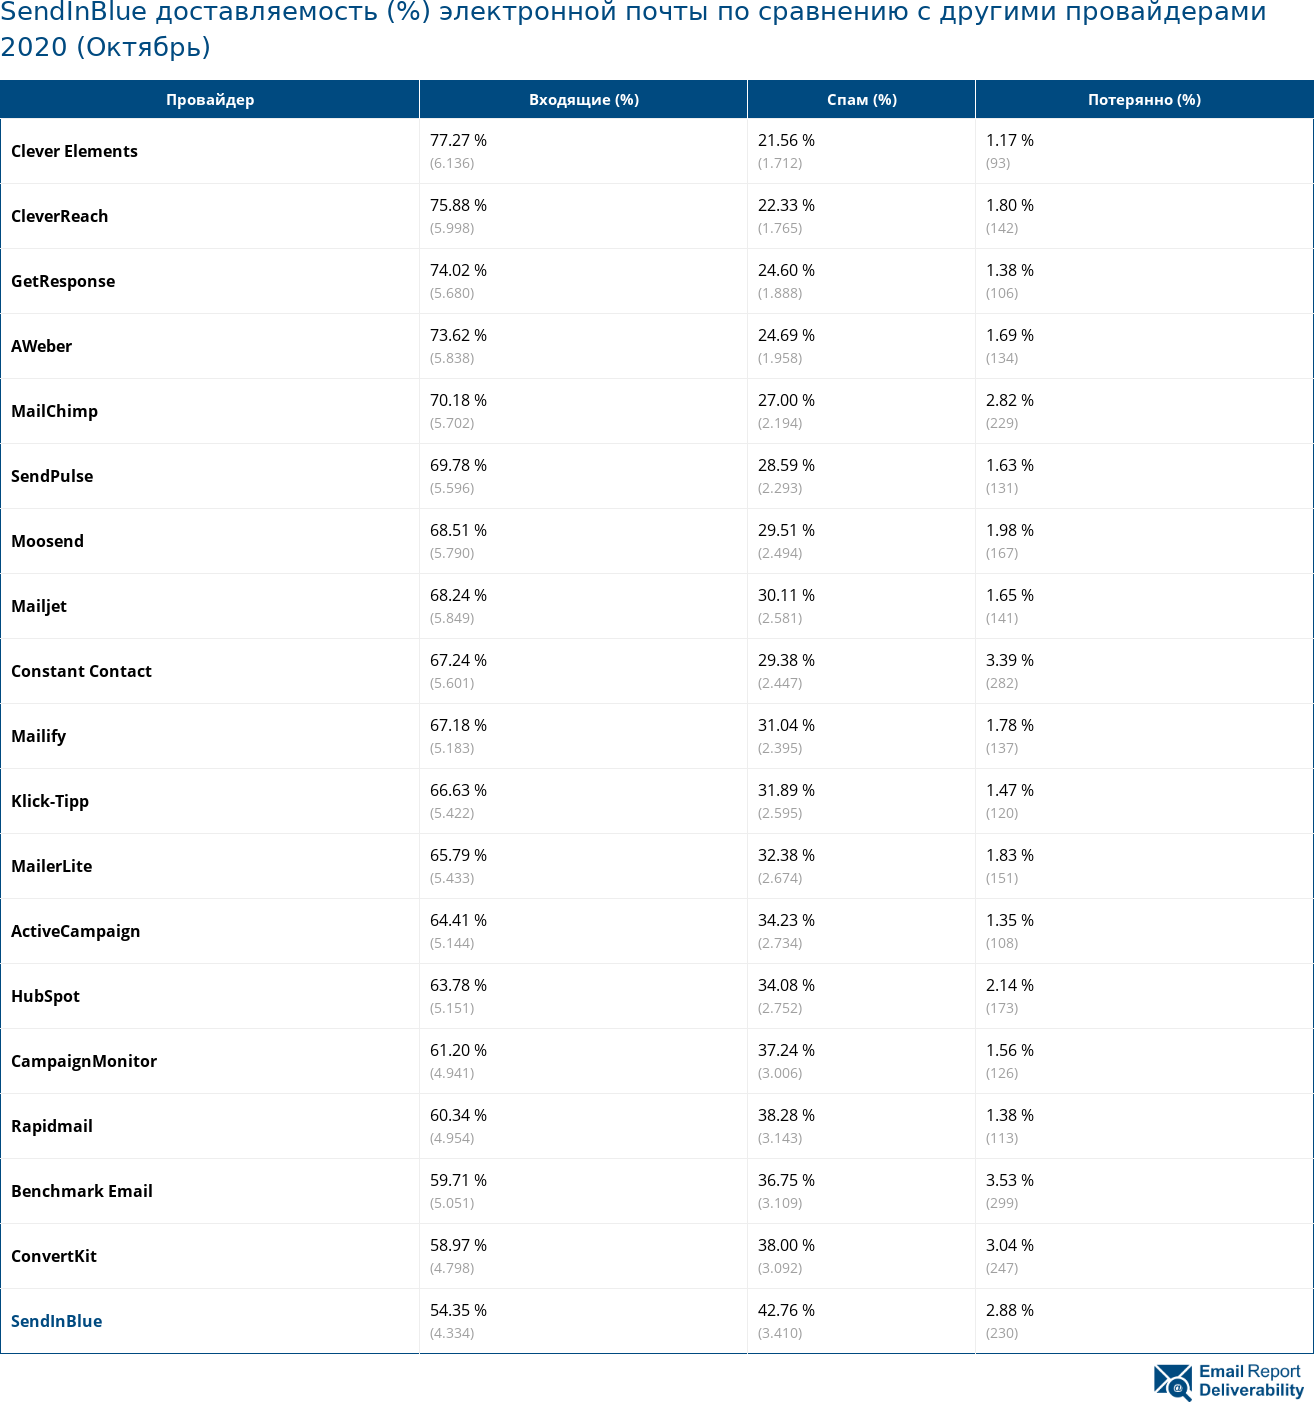 SendInBlue доставляемость (%) электронной почты по сравнению с другими провайдерами 2020 (Октябрь)